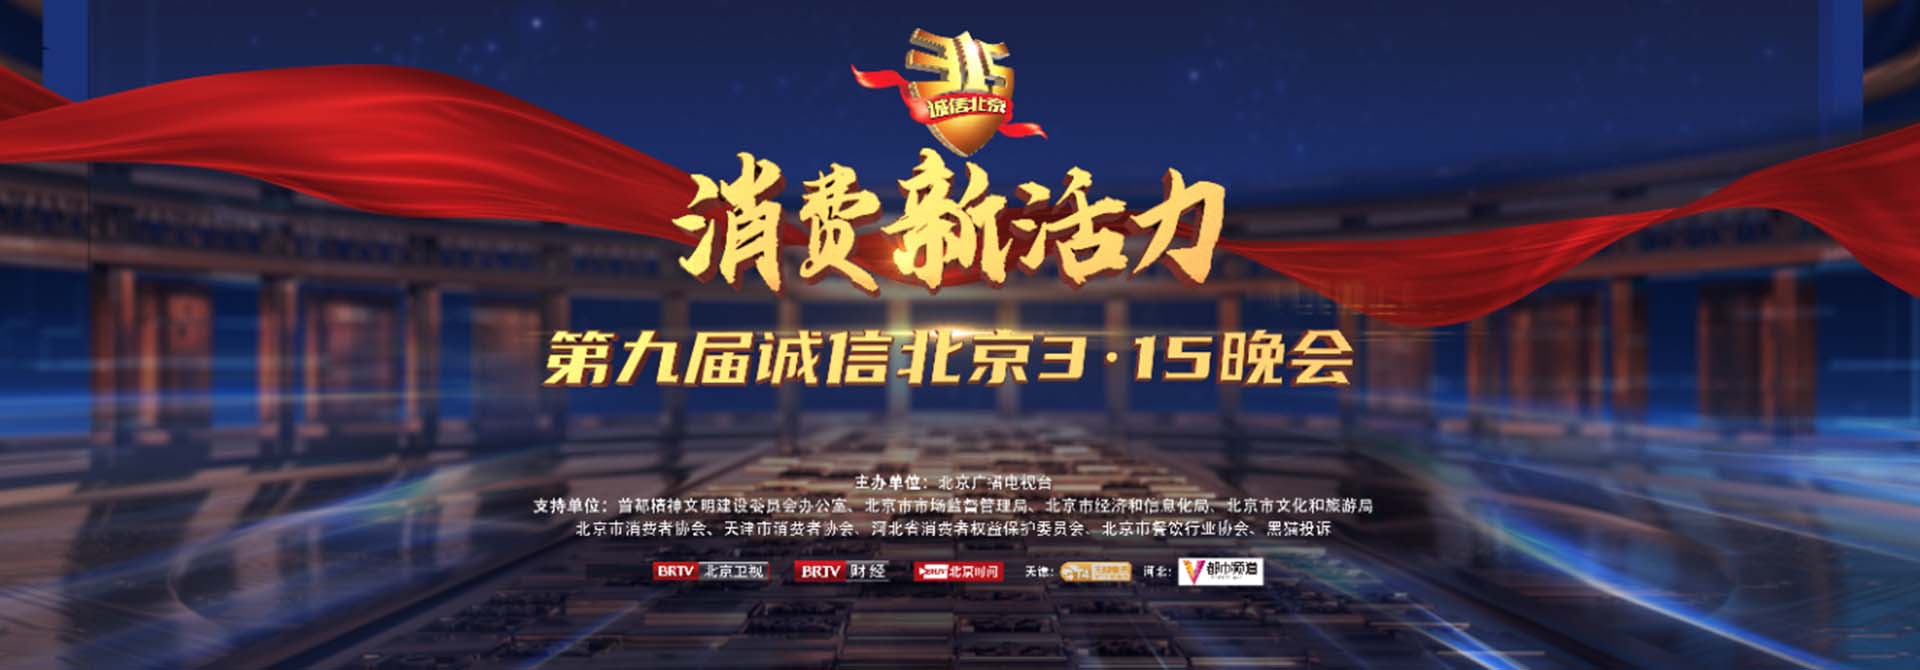 第九届诚信北京3·15国际消费者权益日晚会